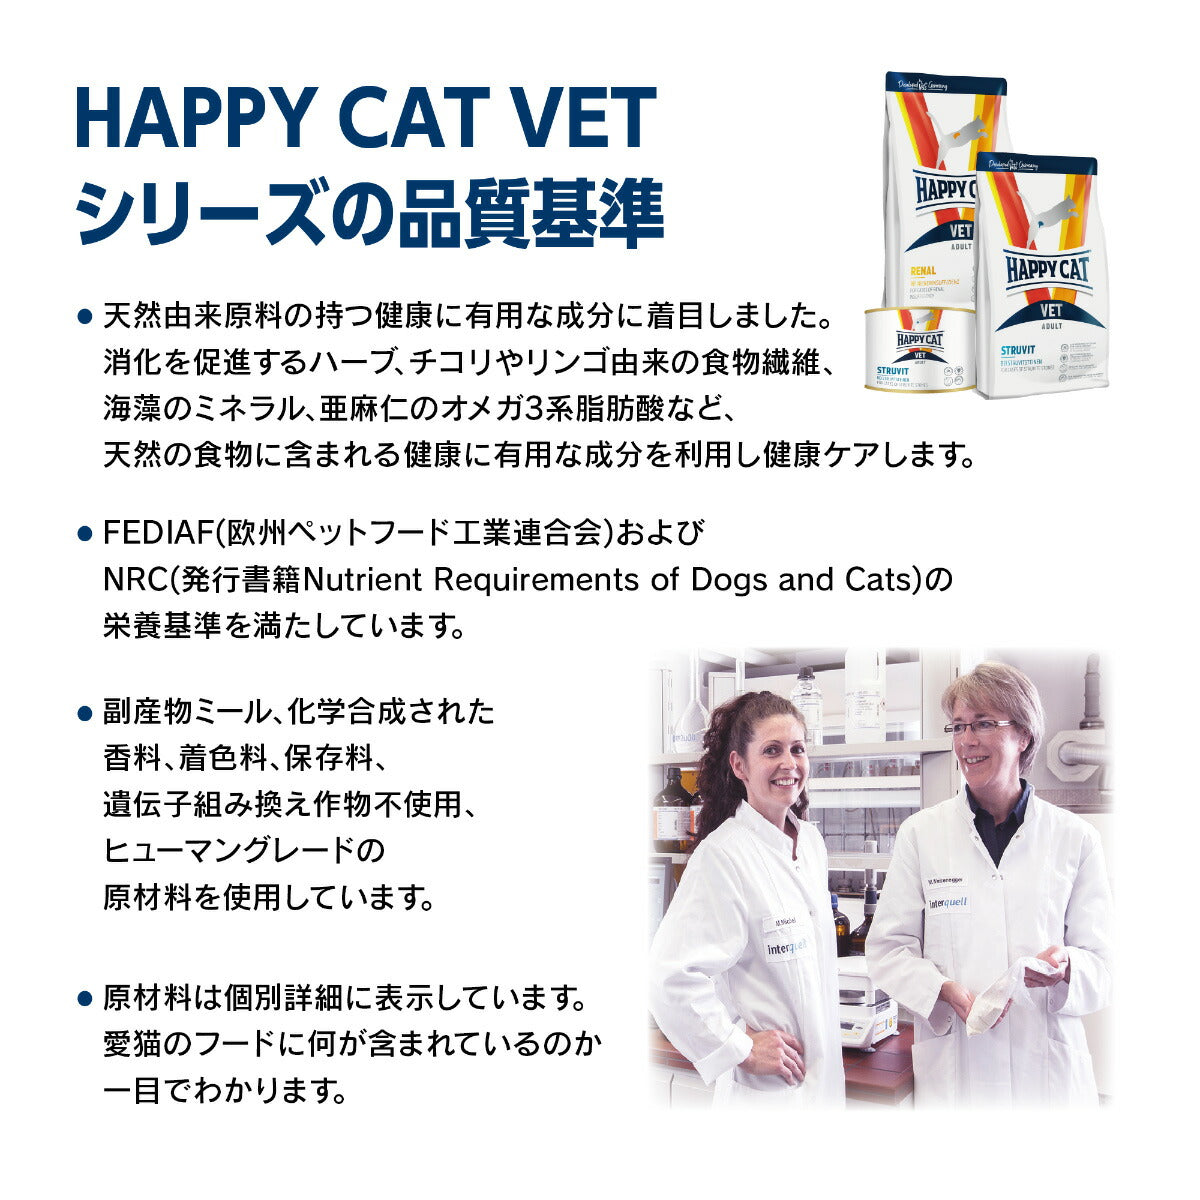 ハッピーキャット HAPPY CAT VET キャットフード 猫用療法食 リーナル（腎臓ケア）ウェット缶 200g